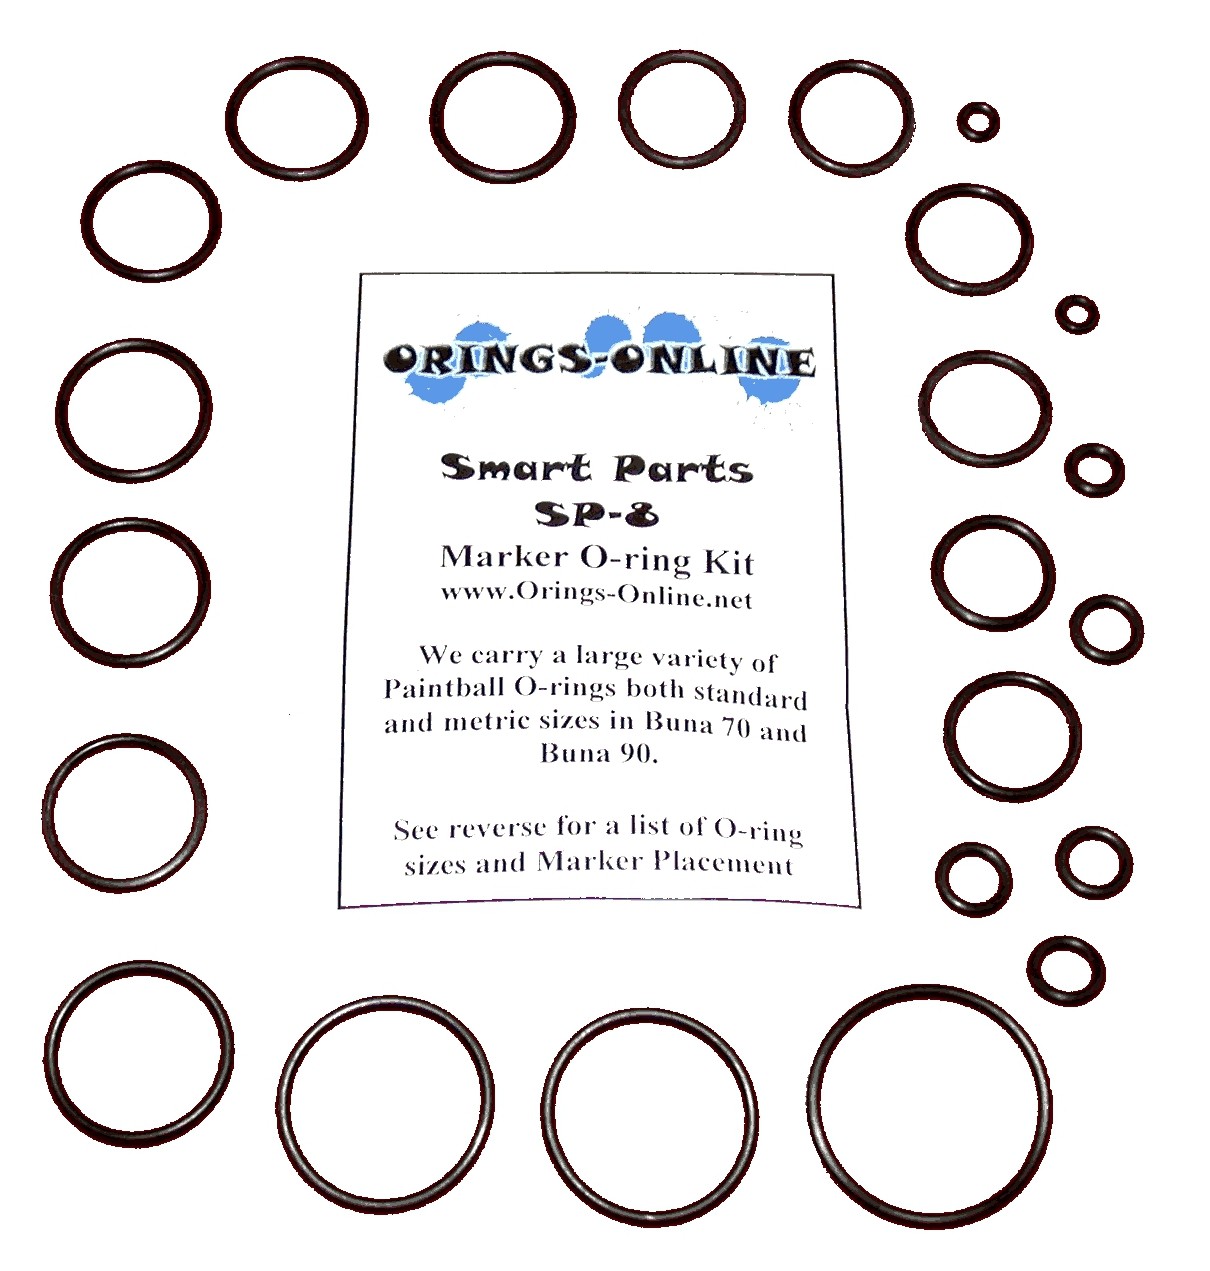 Smart Parts - SP8 Marker O-ring Kit